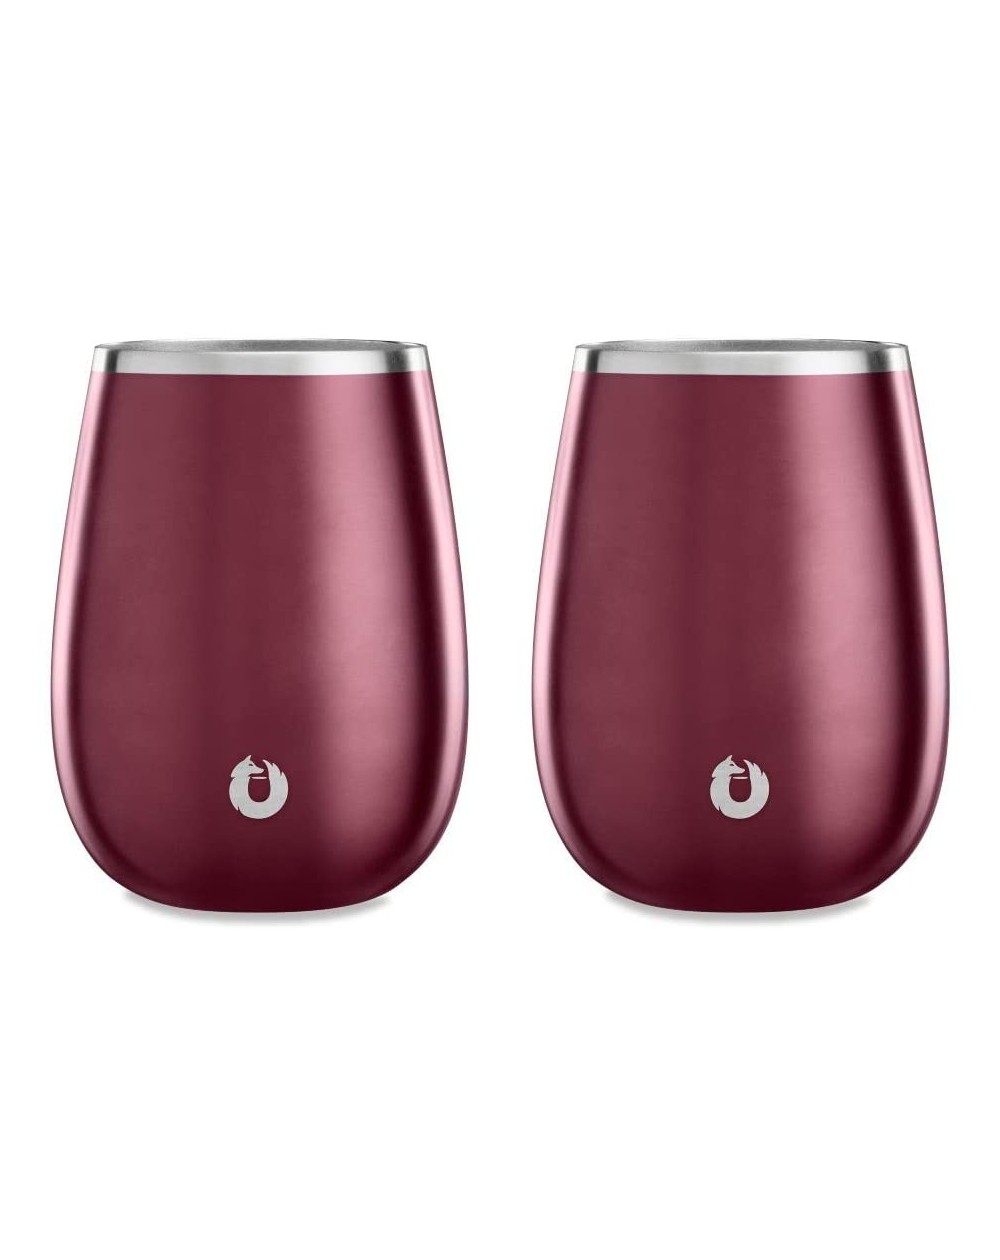 Tableware Insulated Stainless Steel Wine Glasses- Pinot Noir- Set of 2- Dark Rose - Dark Rose - C718D8O8OAG $24.65